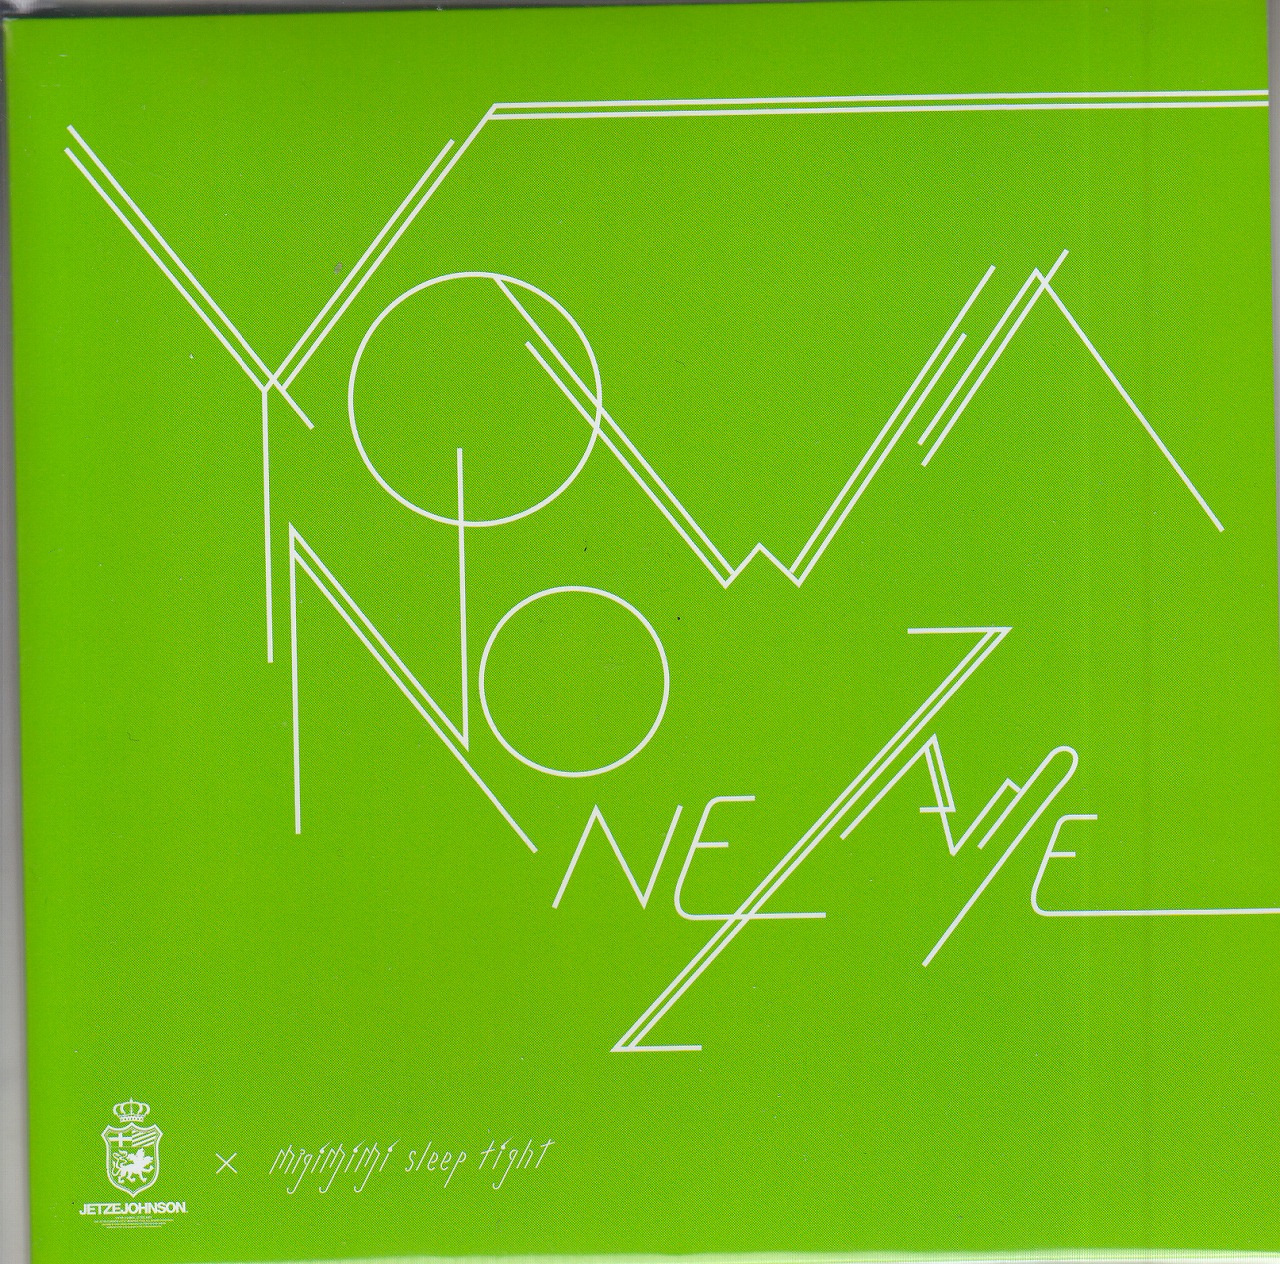 ミギミミスリープタイト の CD YOWA NO NEZAME